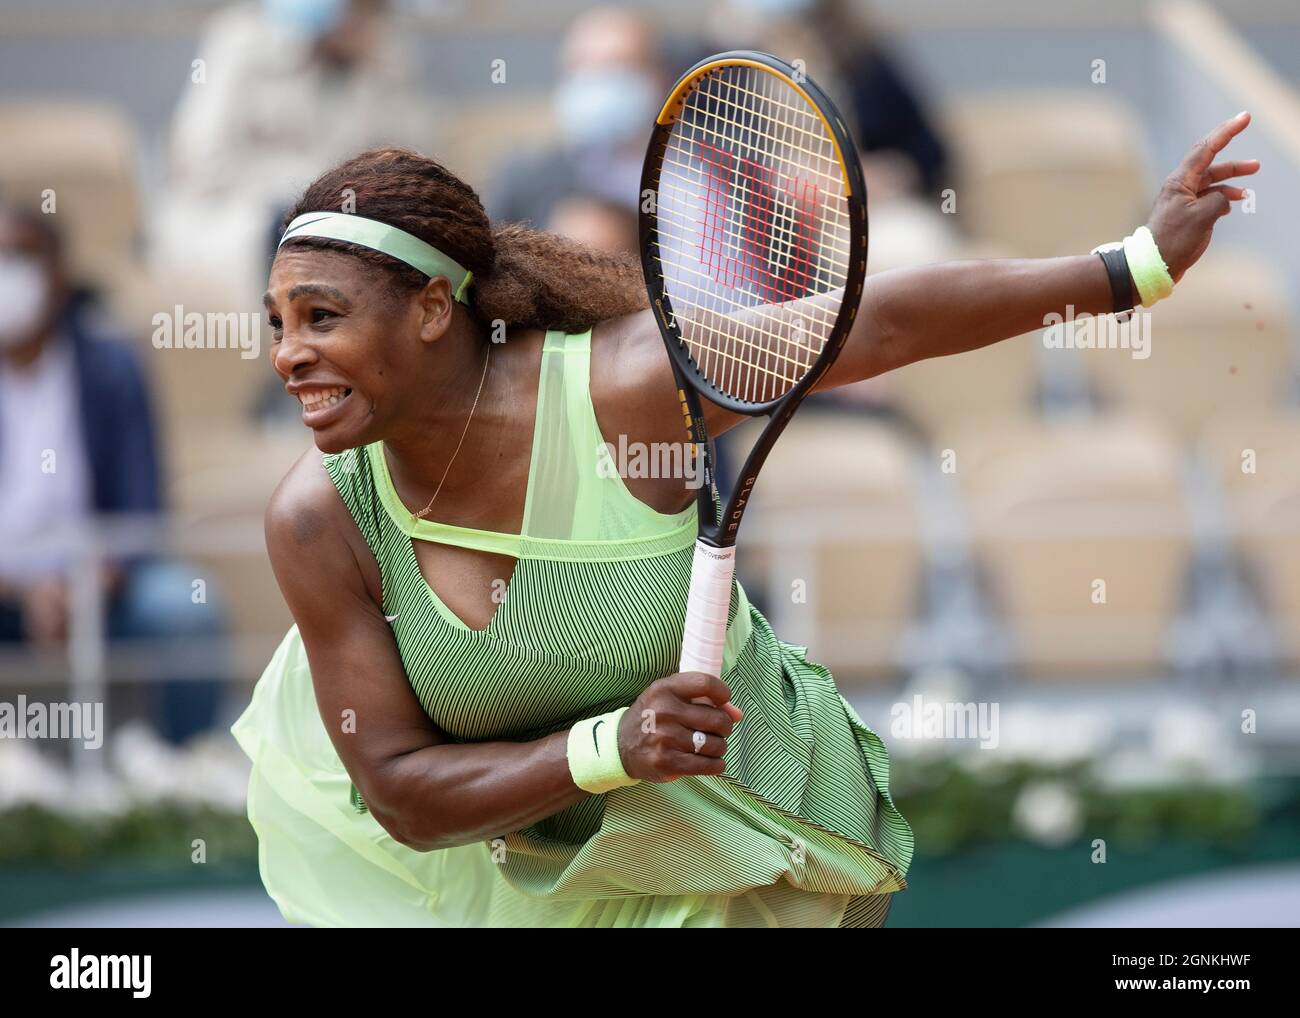 SERENA Williams (USA), JOUEUR DE tennis AMÉRICAIN jouant un tir de service, tournoi de tennis French Open 2021, Paris, France. Banque D'Images